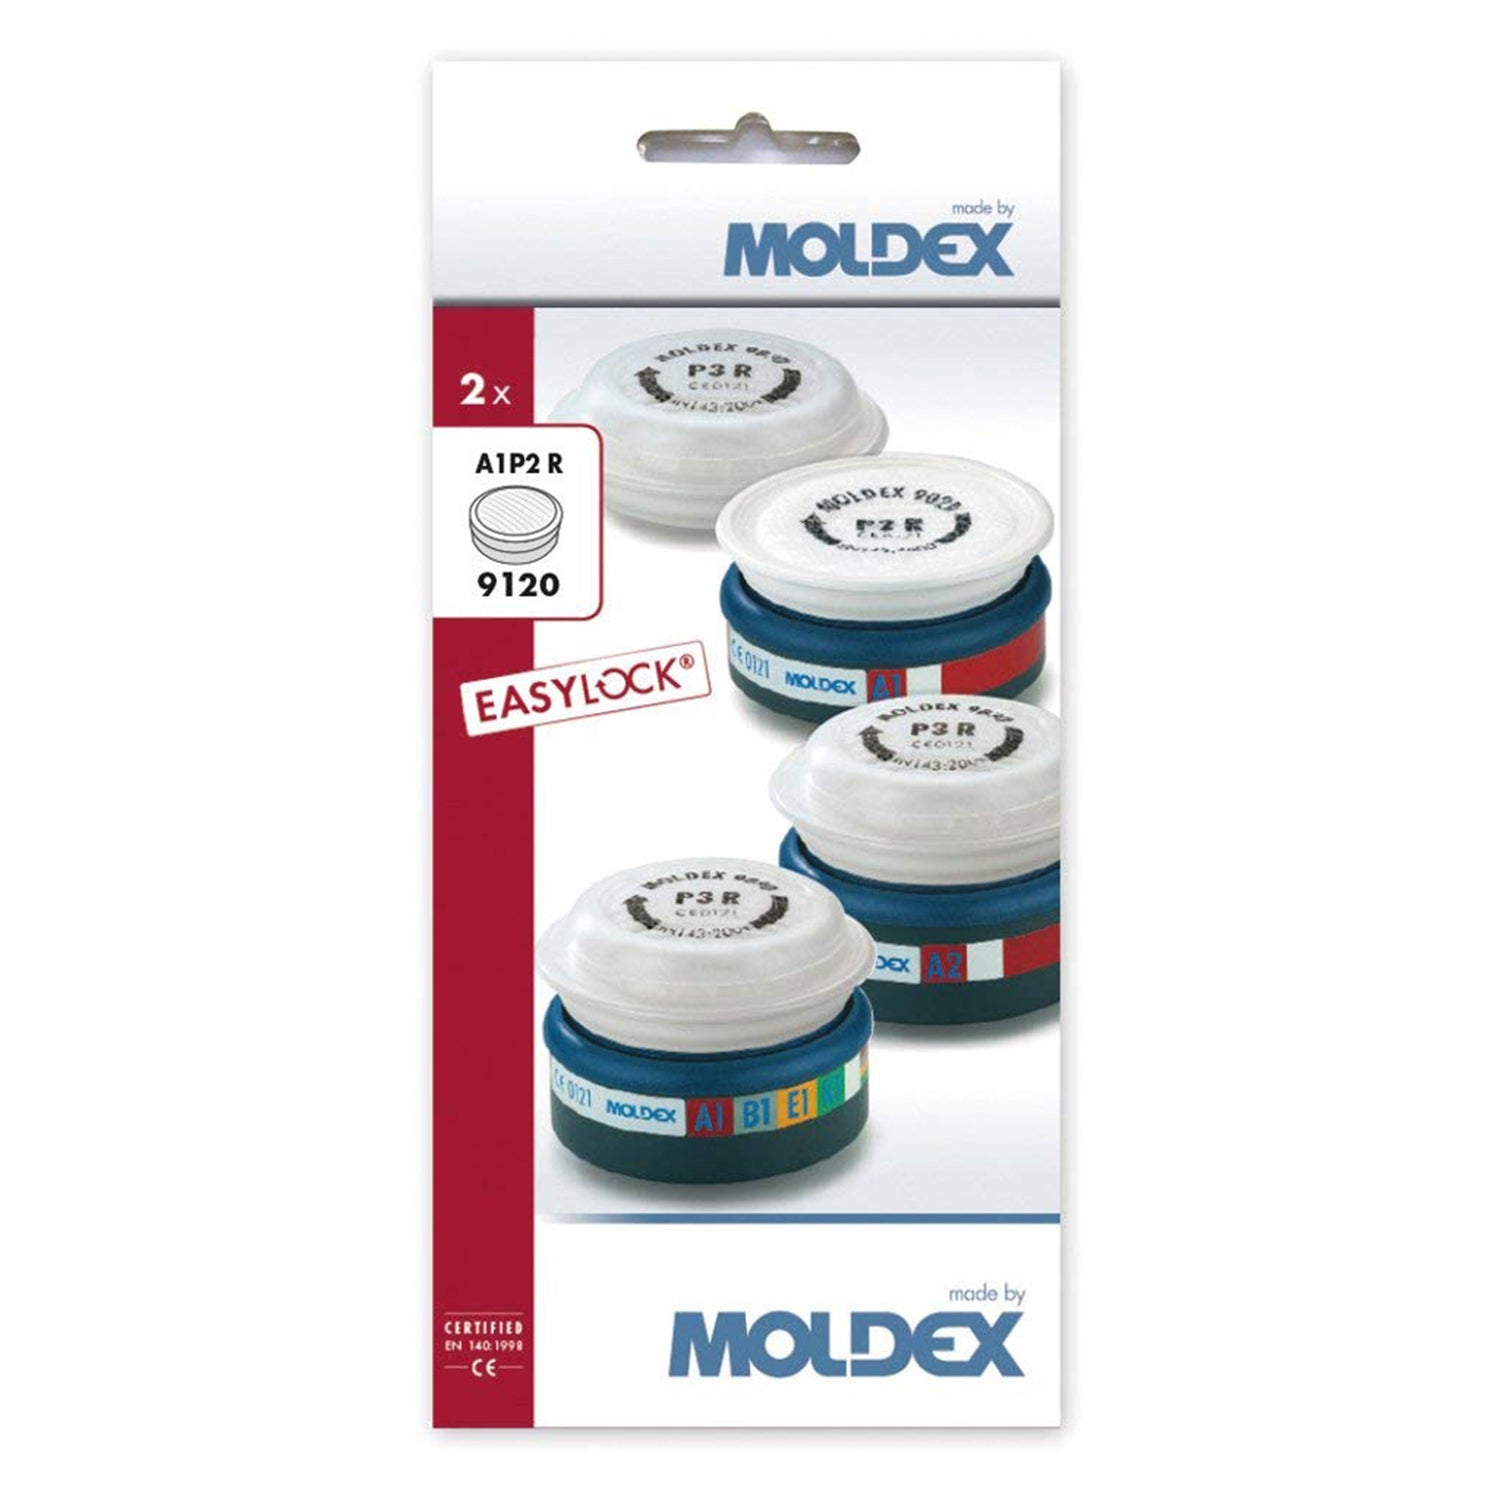 MOLDEX 9120 - A1P2 R EasyLock Pre-assembled Filters box